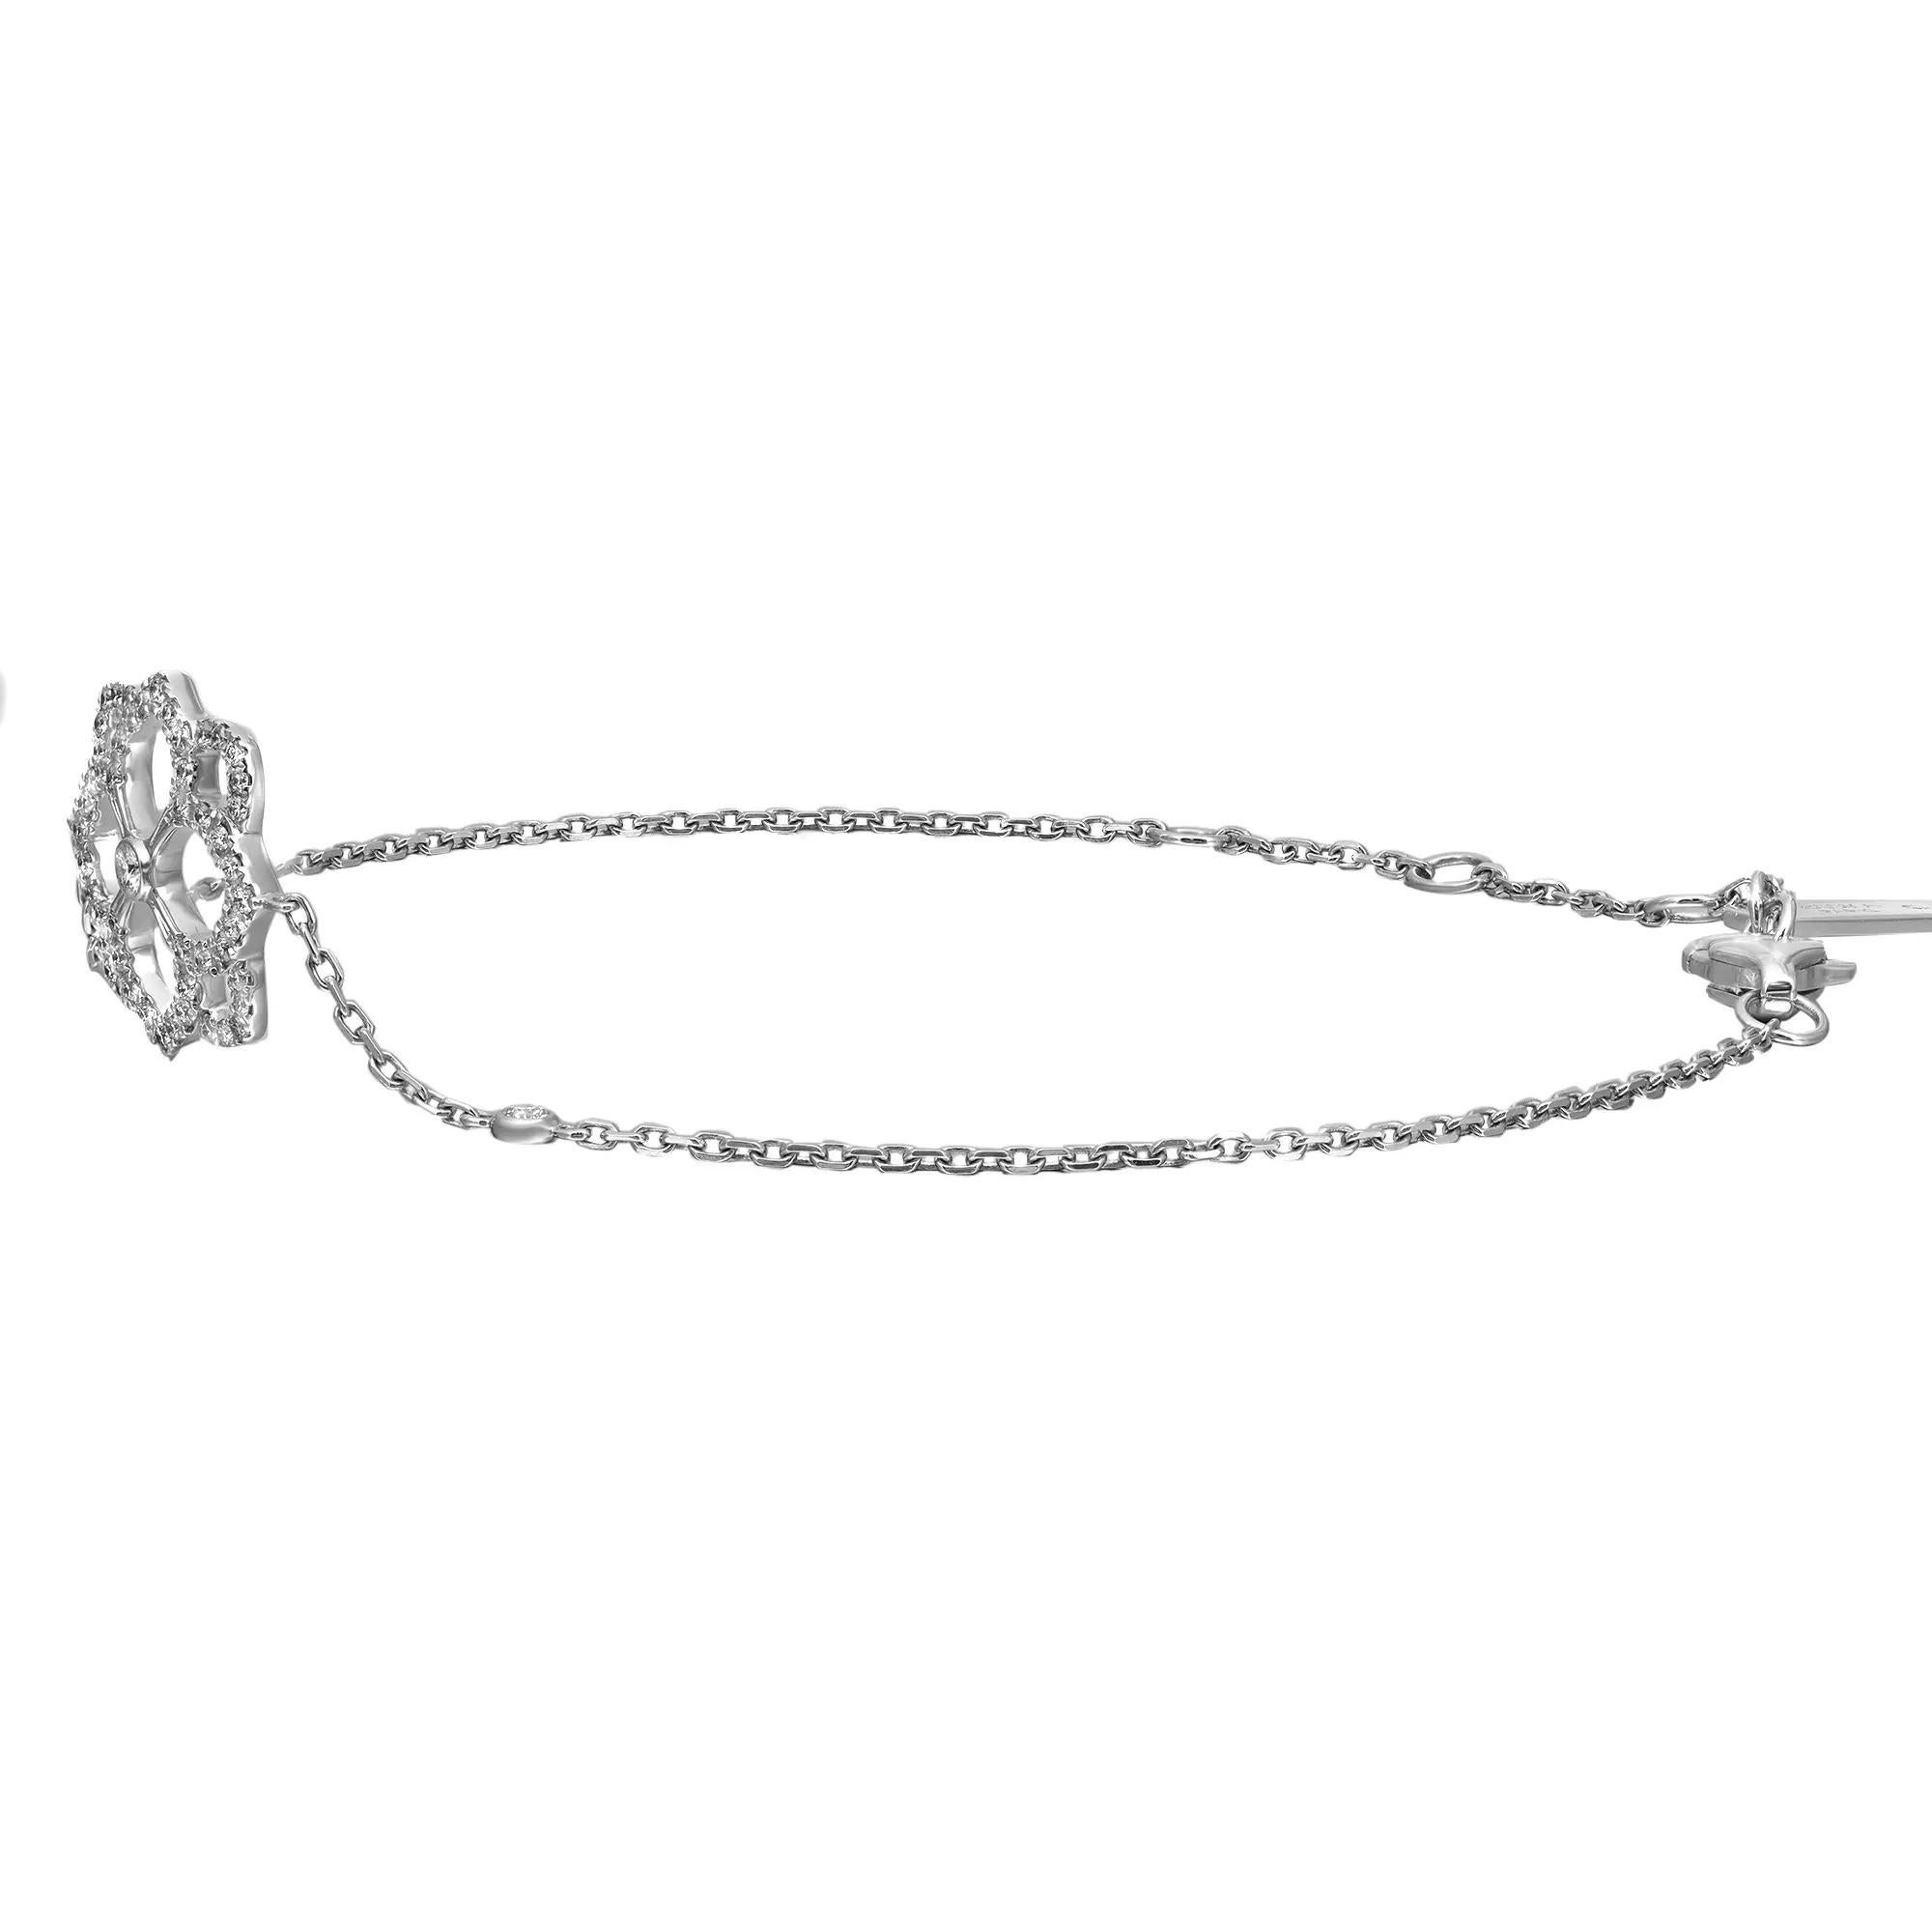 Délicat mais robuste, ce bracelet à chaîne en diamants Messika Eden est parfait pour votre look de tous les jours. Whiting en or blanc 18 carats poli. Il est empilable et facile à combiner. Ce bracelet présente un motif floral serti de diamants